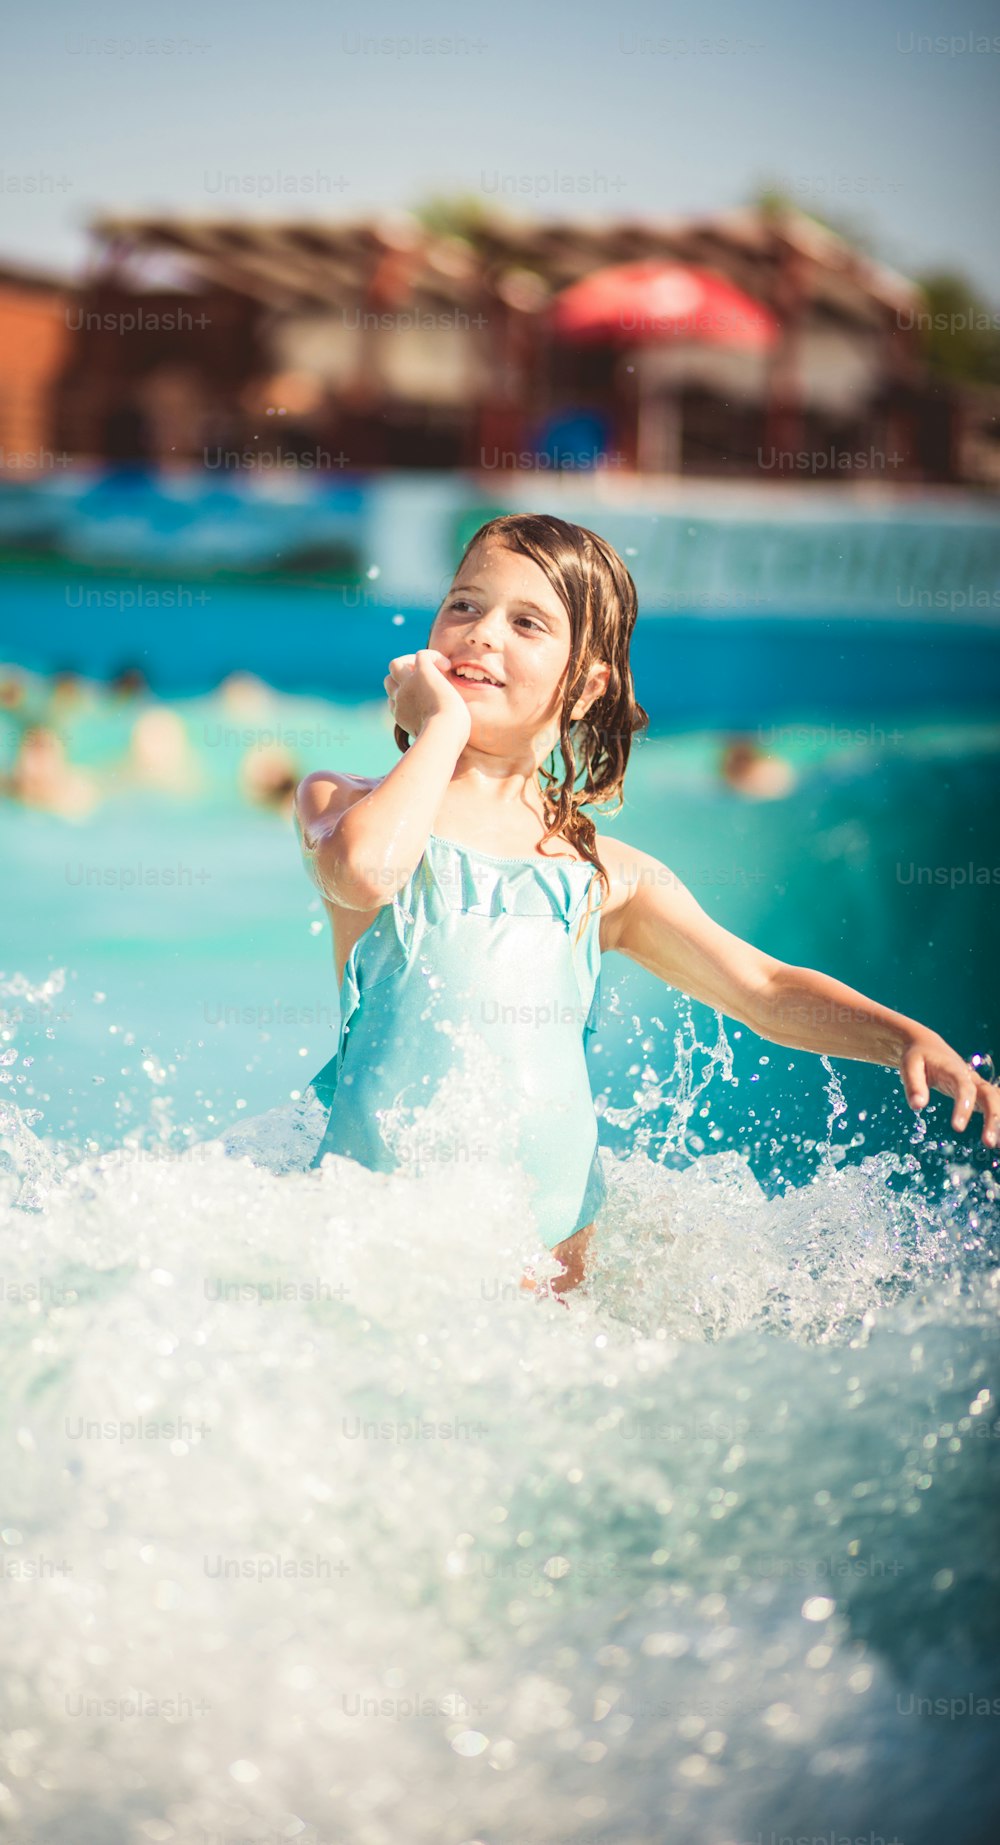 Waves is so fun. Child having fun in the pool.